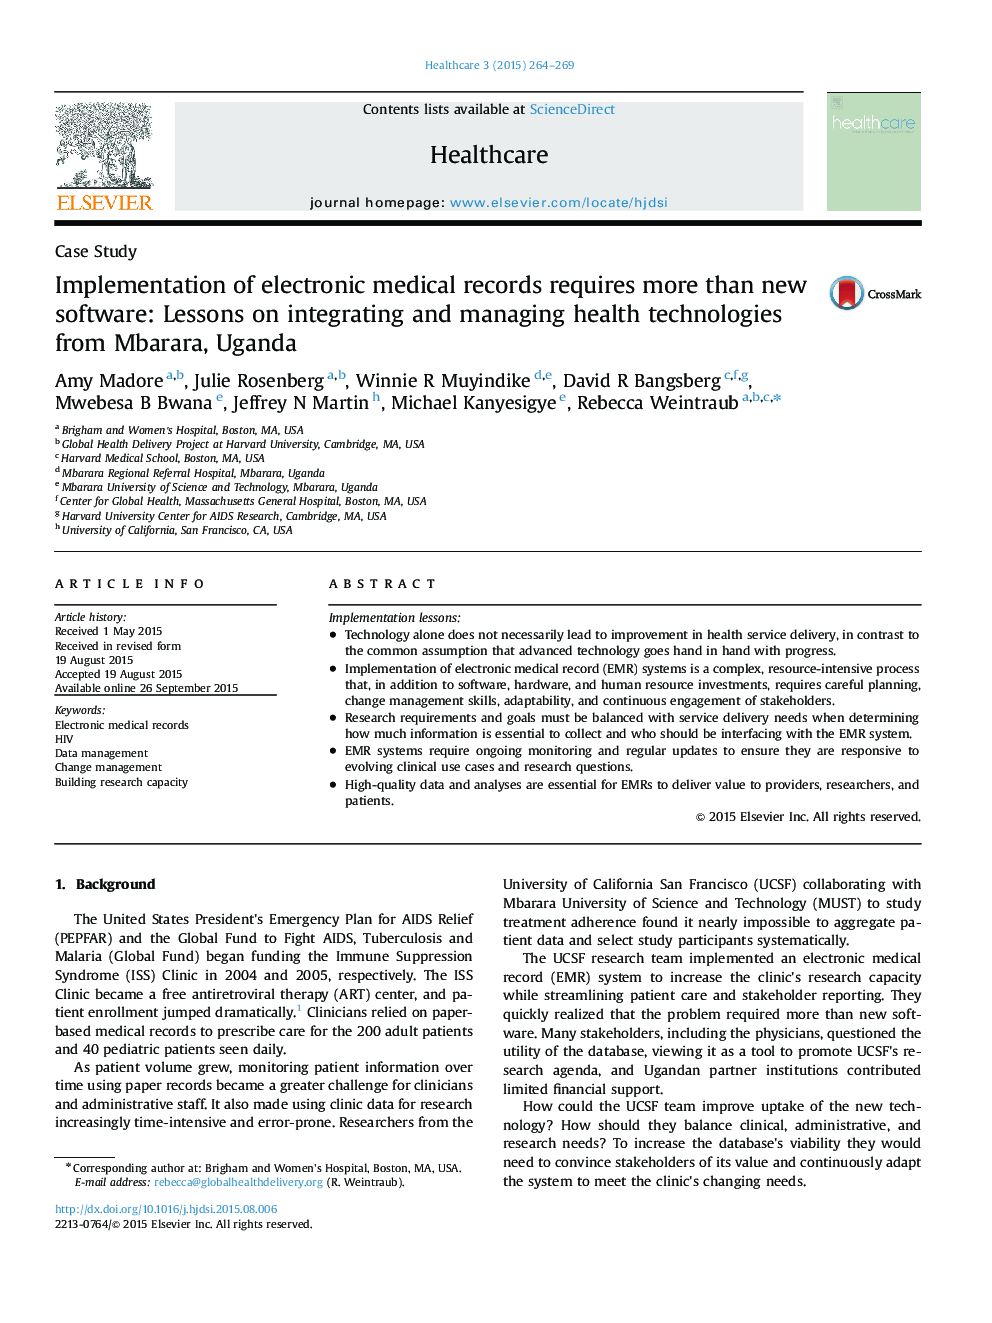 پیاده سازی پرونده های پزشکی الکترونیکی نیاز به بیش از نرم افزار جدید دارد: درس هایی از تلفیق و مدیریت فناوری های بهداشتی از Mbarara، اوگاندا